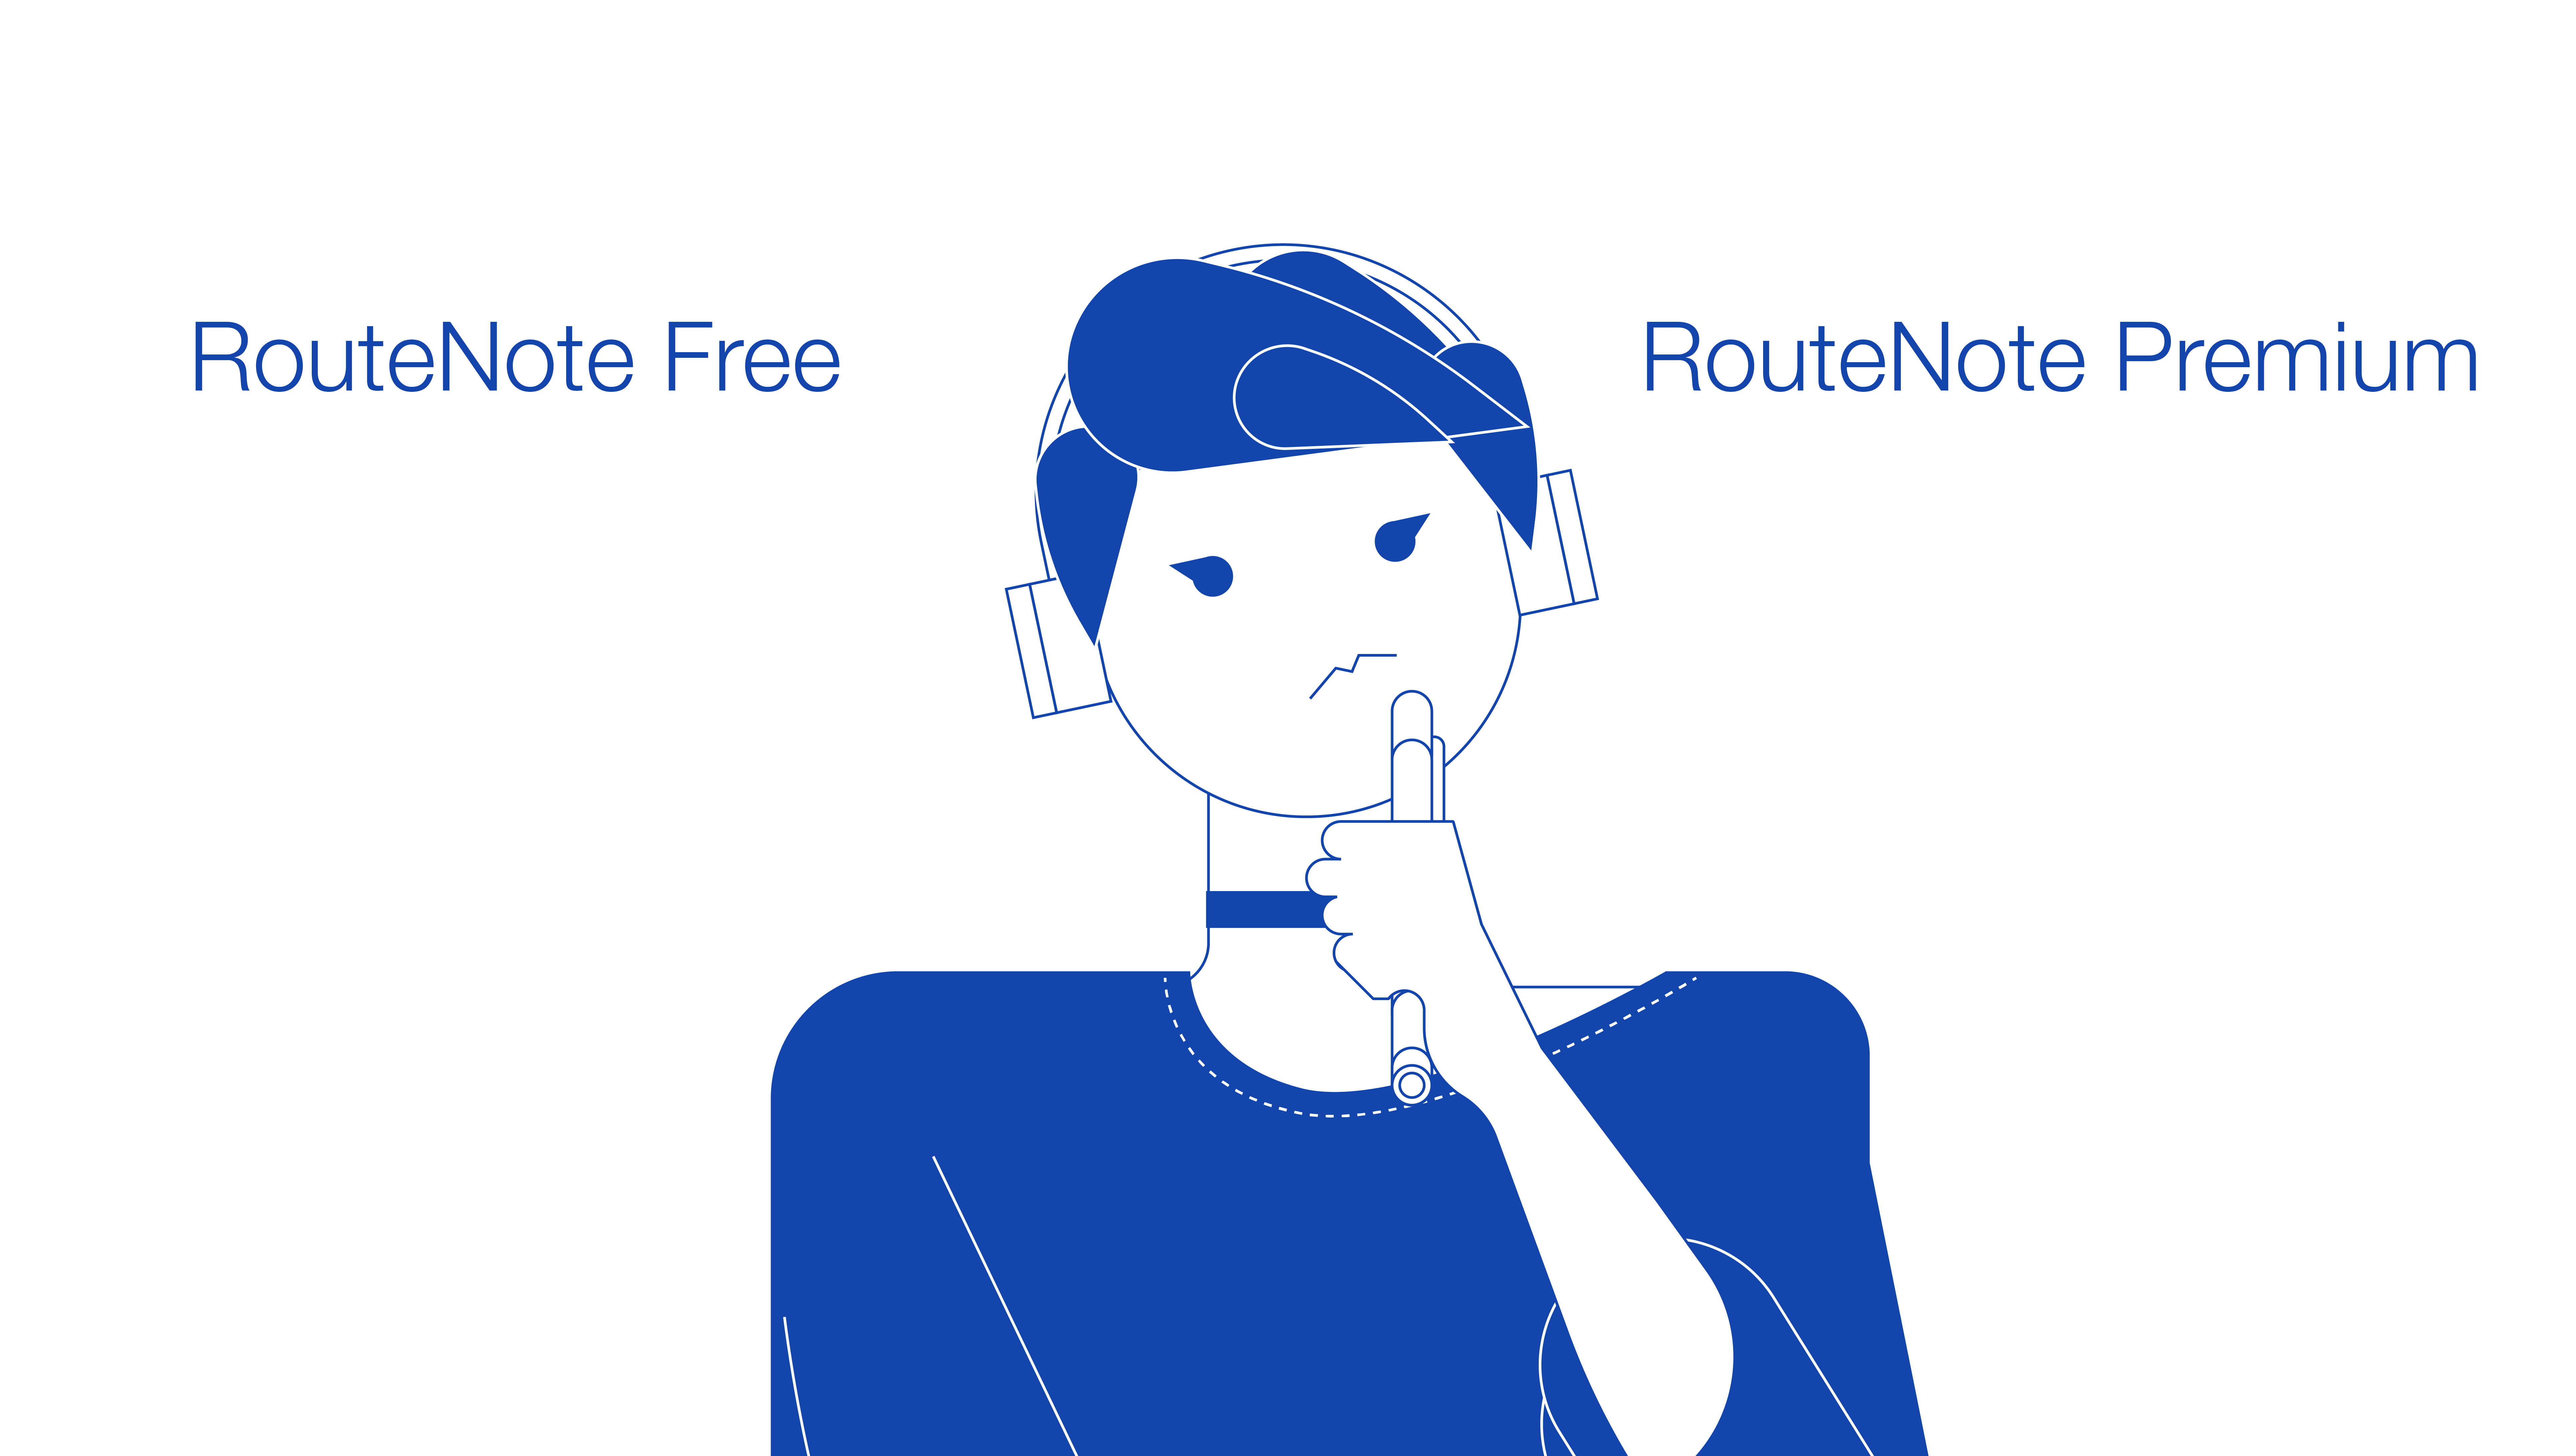 Routenote Free vs RouteNote Premium